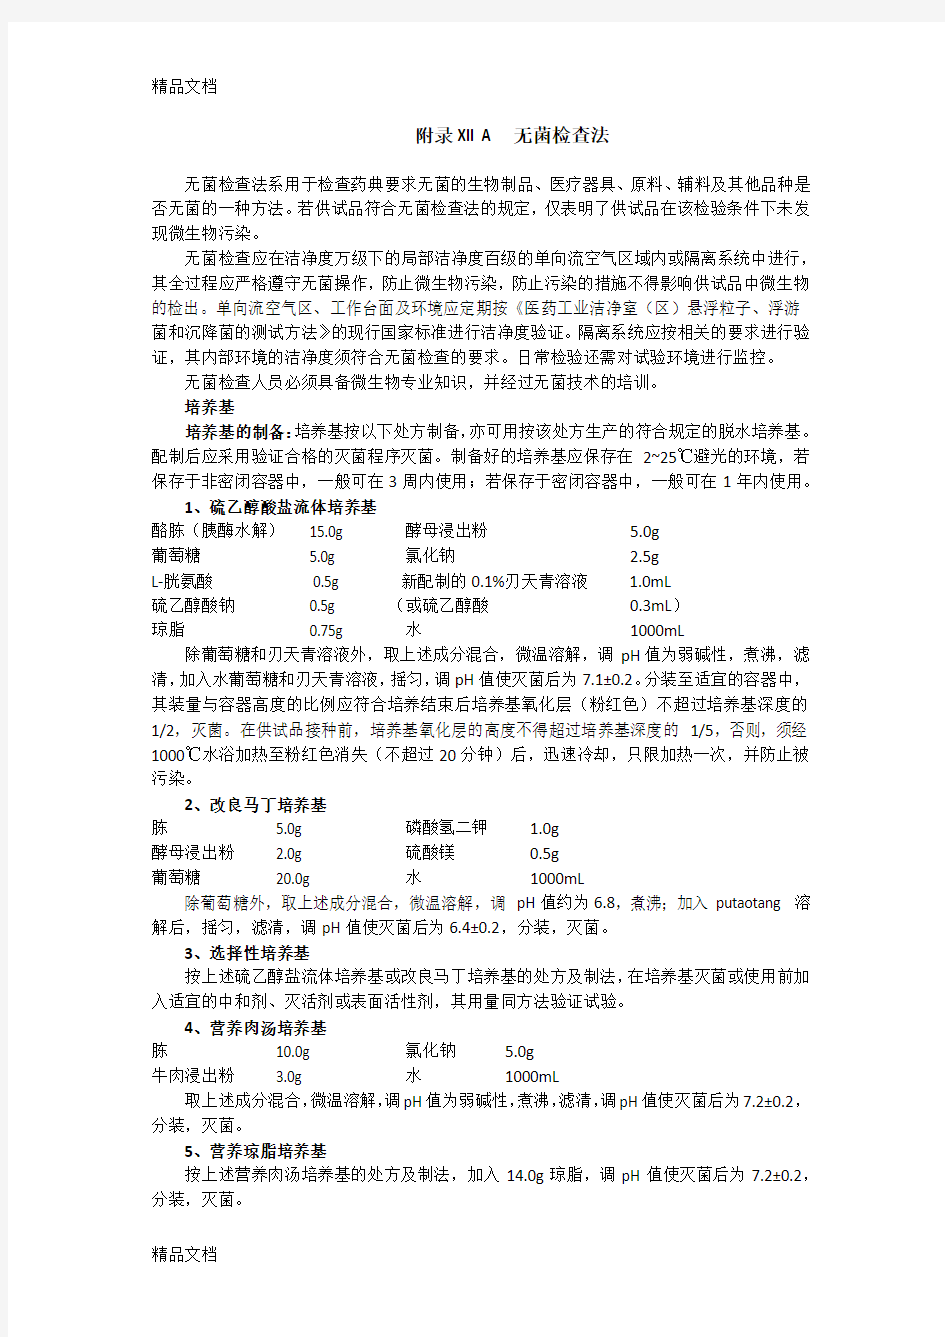 无菌检查法-中国药典第三部-附录xiia教案资料